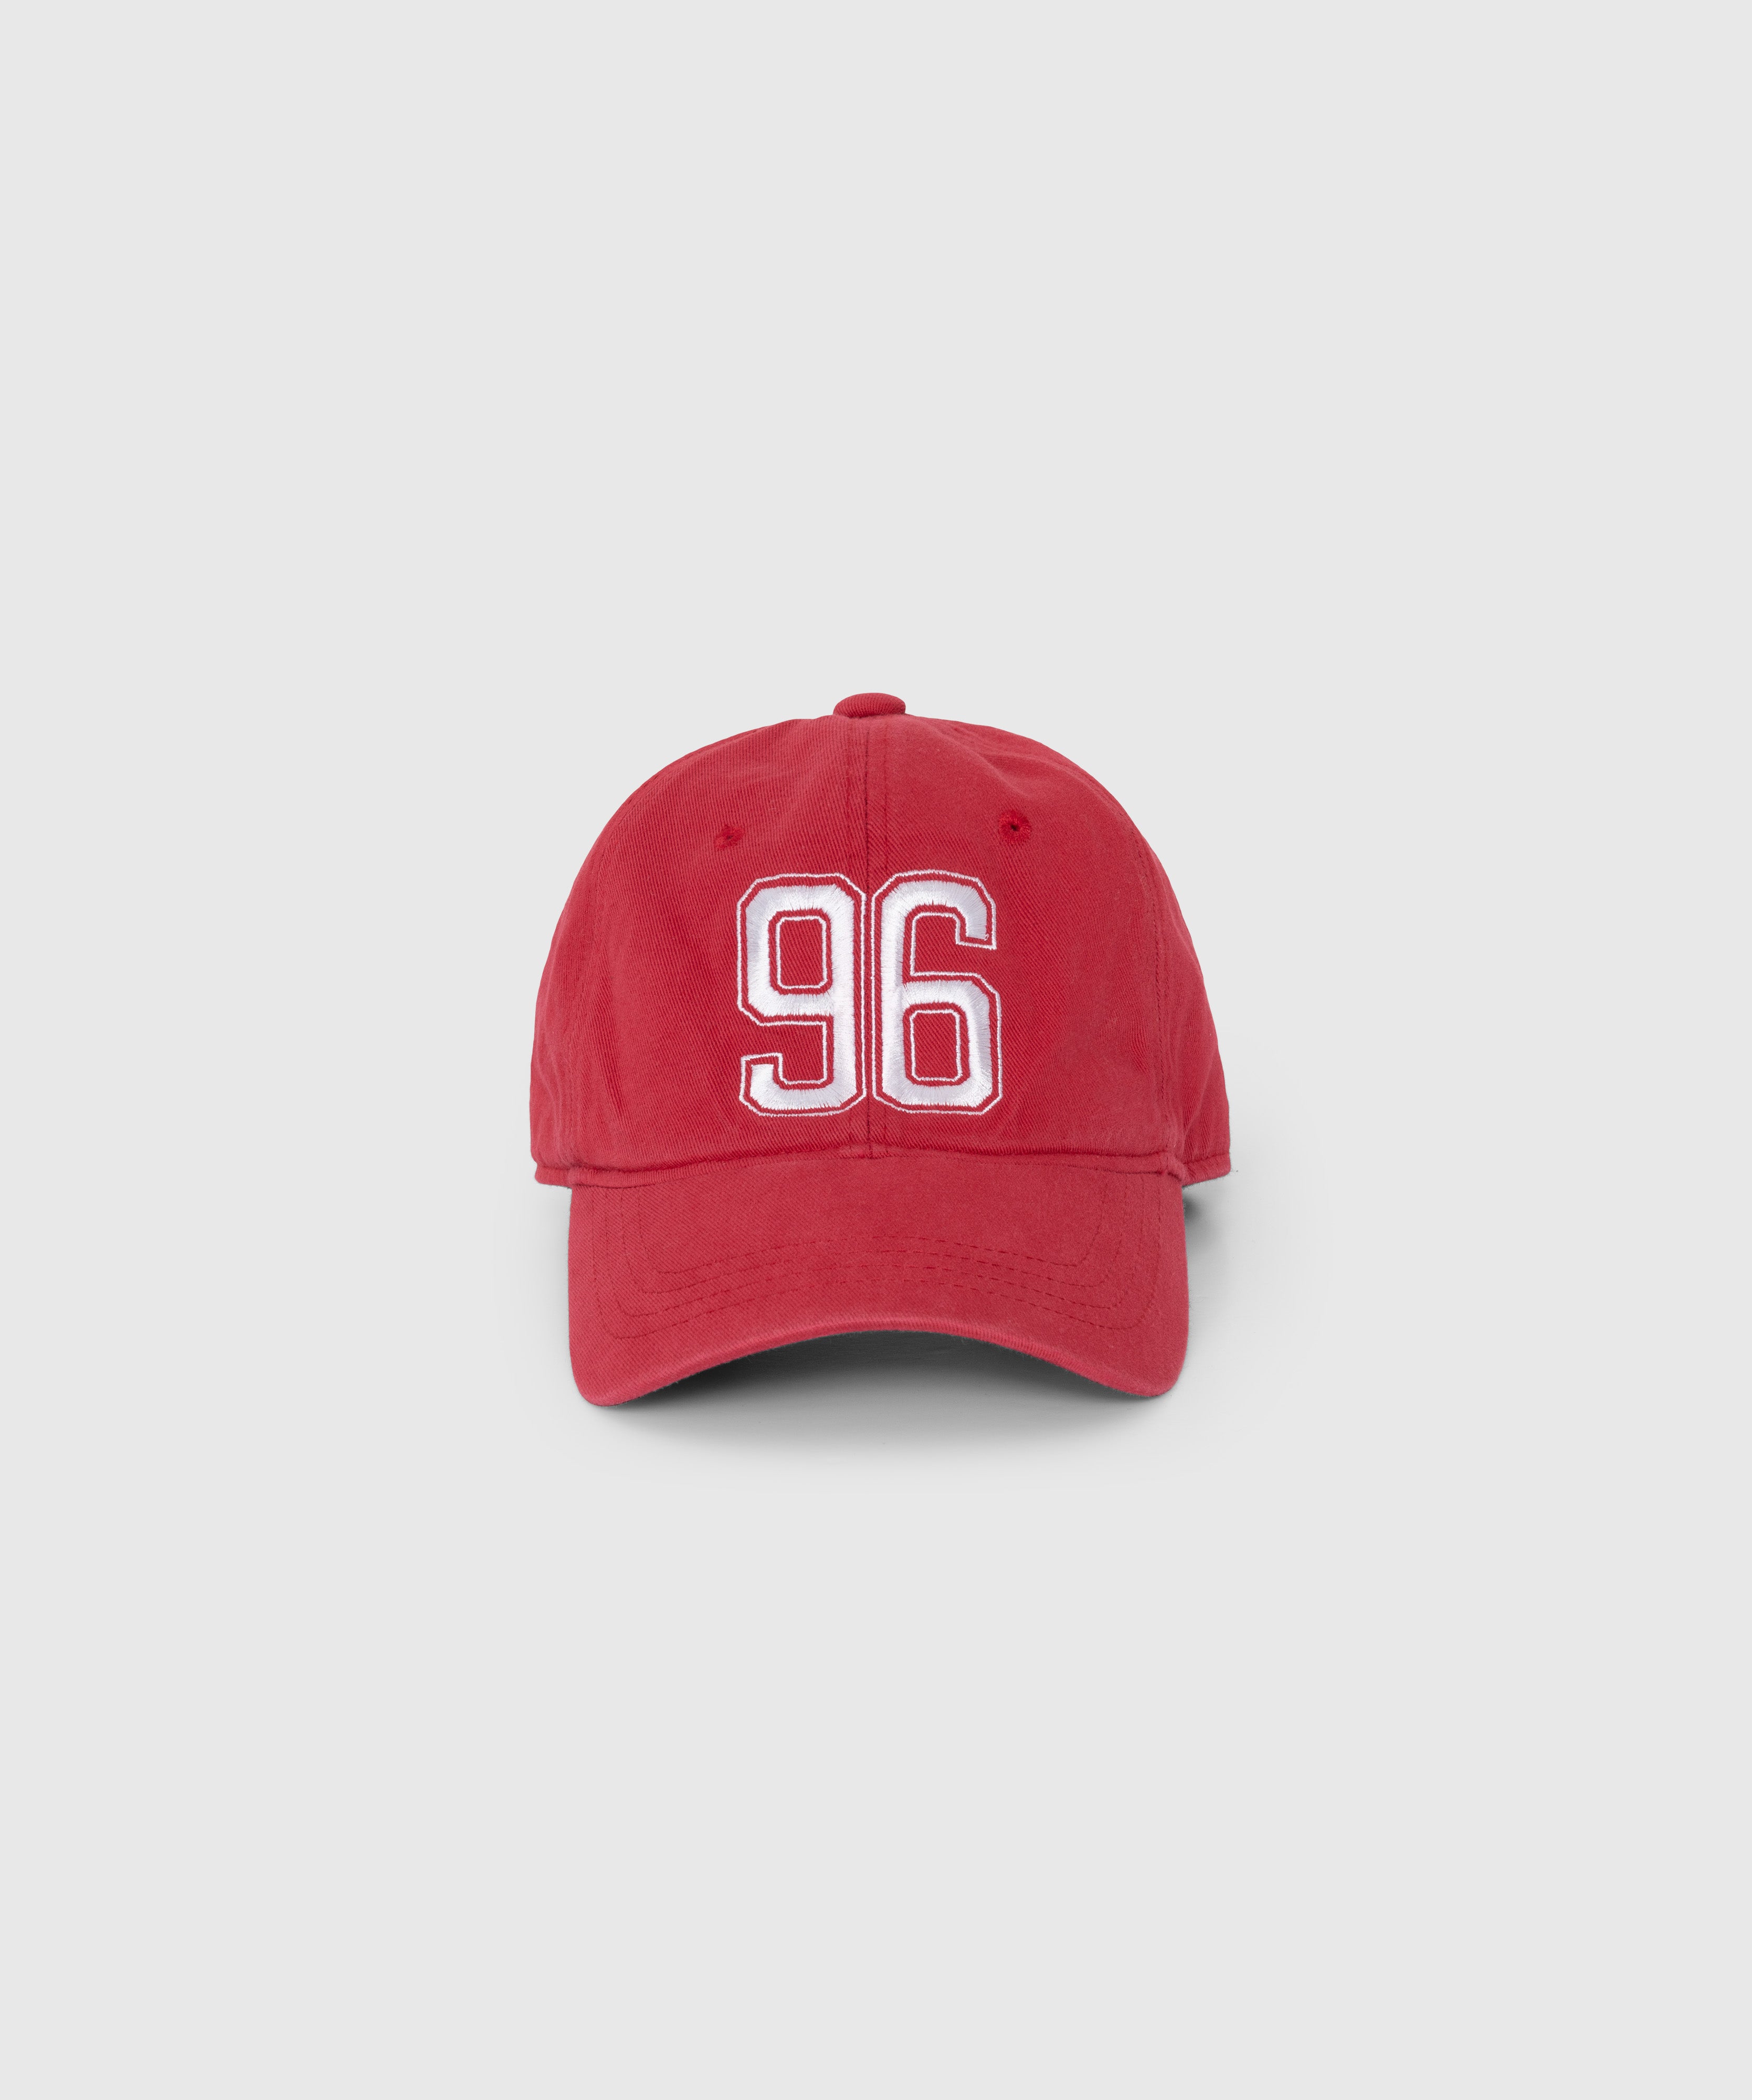 96 CAP_RED